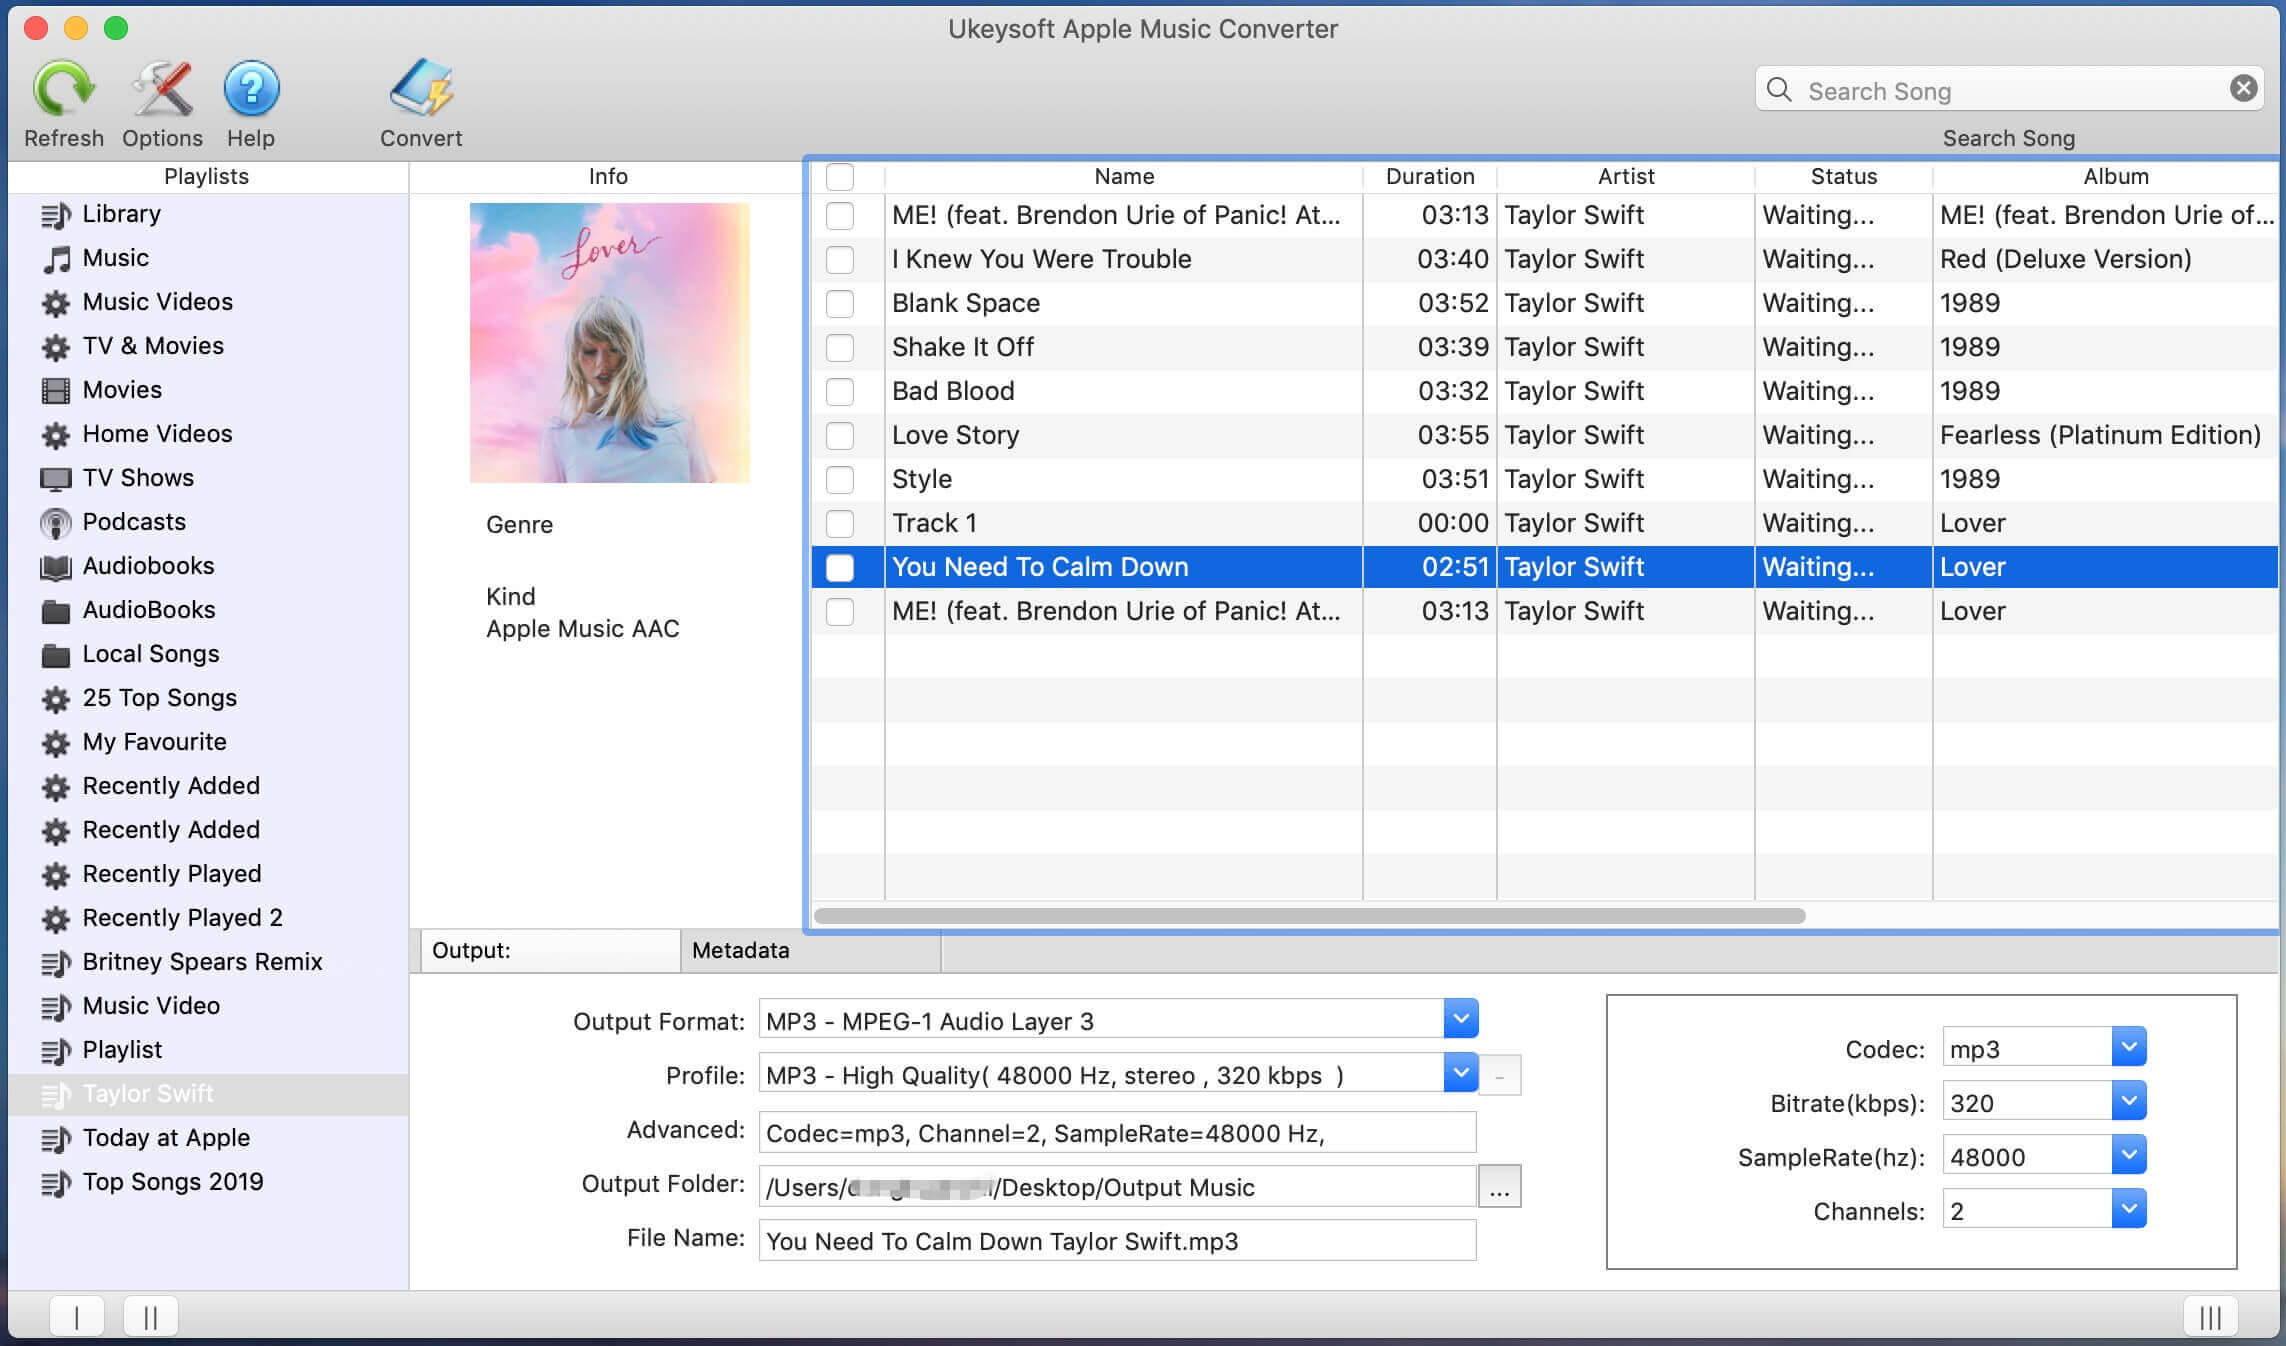 download drm free iplayer mac